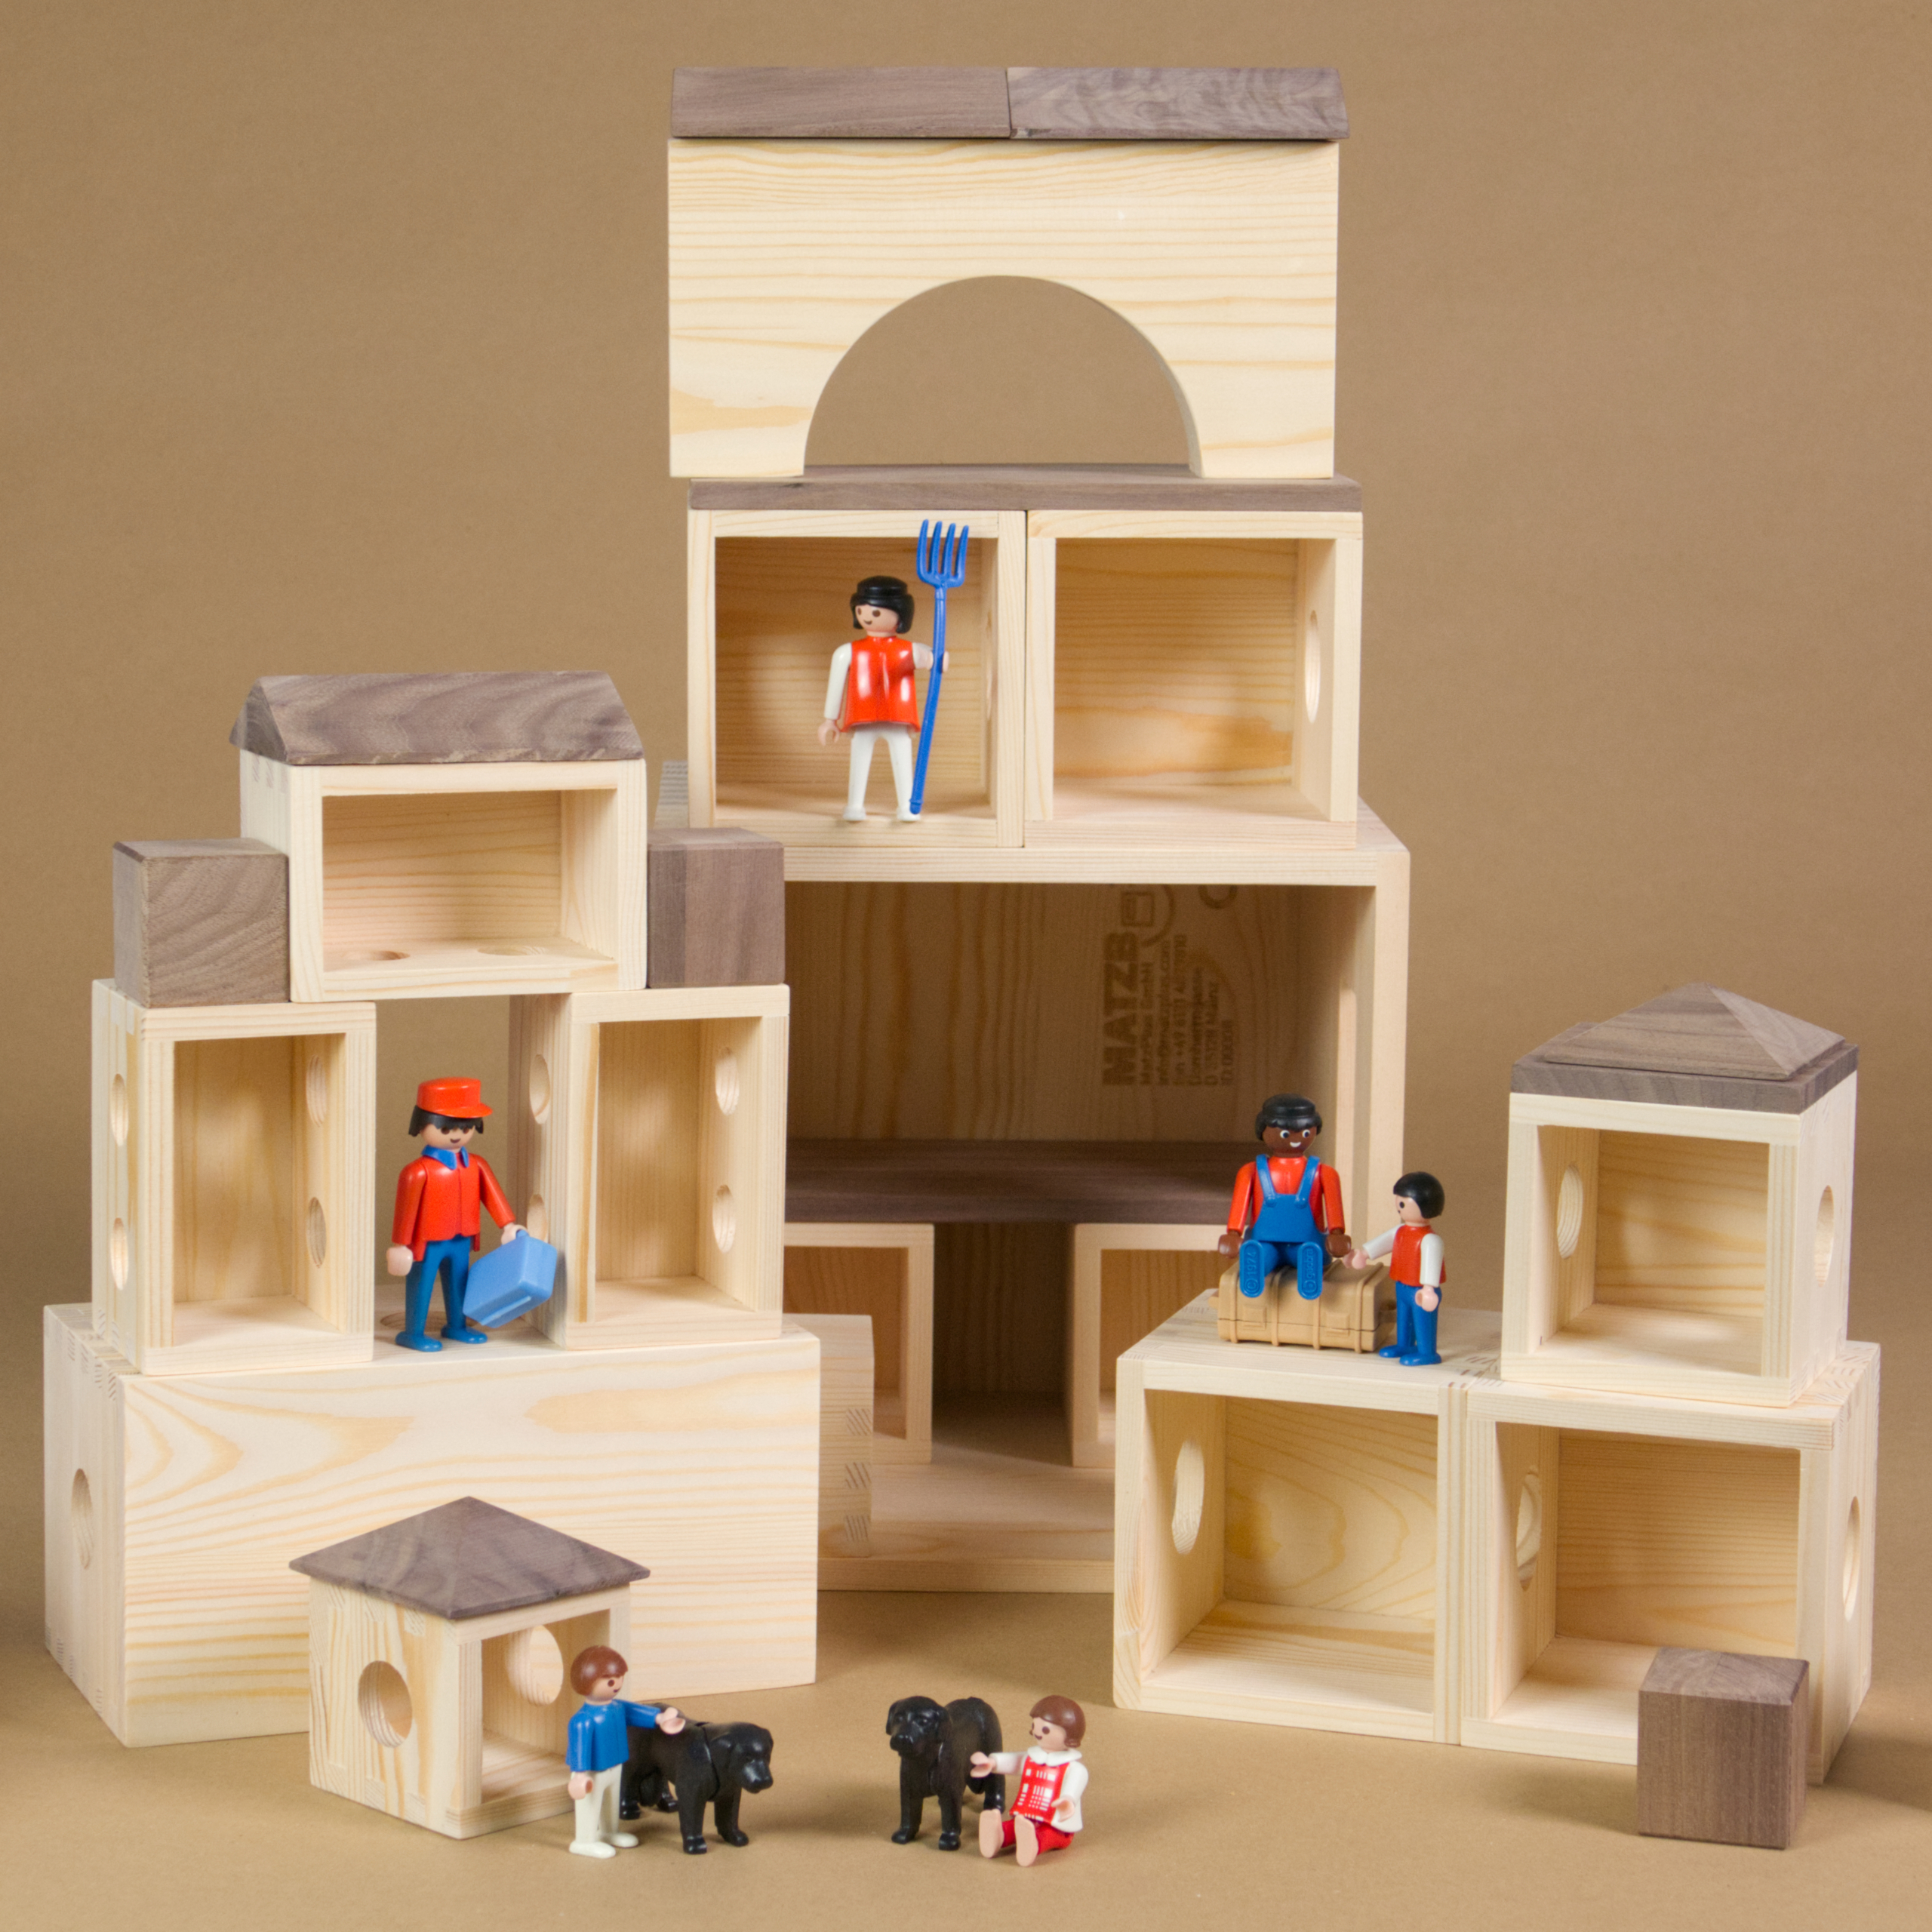 MATZBOX-Idee: Die Holzelemente der MATZBOX, offene Holzkästchen und Bausteine, sind zu einer Sammlung kleinerer Gebilde arrangiert. Die Spielhäuser sind unterschiedlich groß und stehen verteilt. Als Spielfiguren wurden Playmobil-Figuren verwendet. Drei Erwachsenenfiguren, drei Playmobil-Kinder und zwei Hunde beleben die Spielszene.